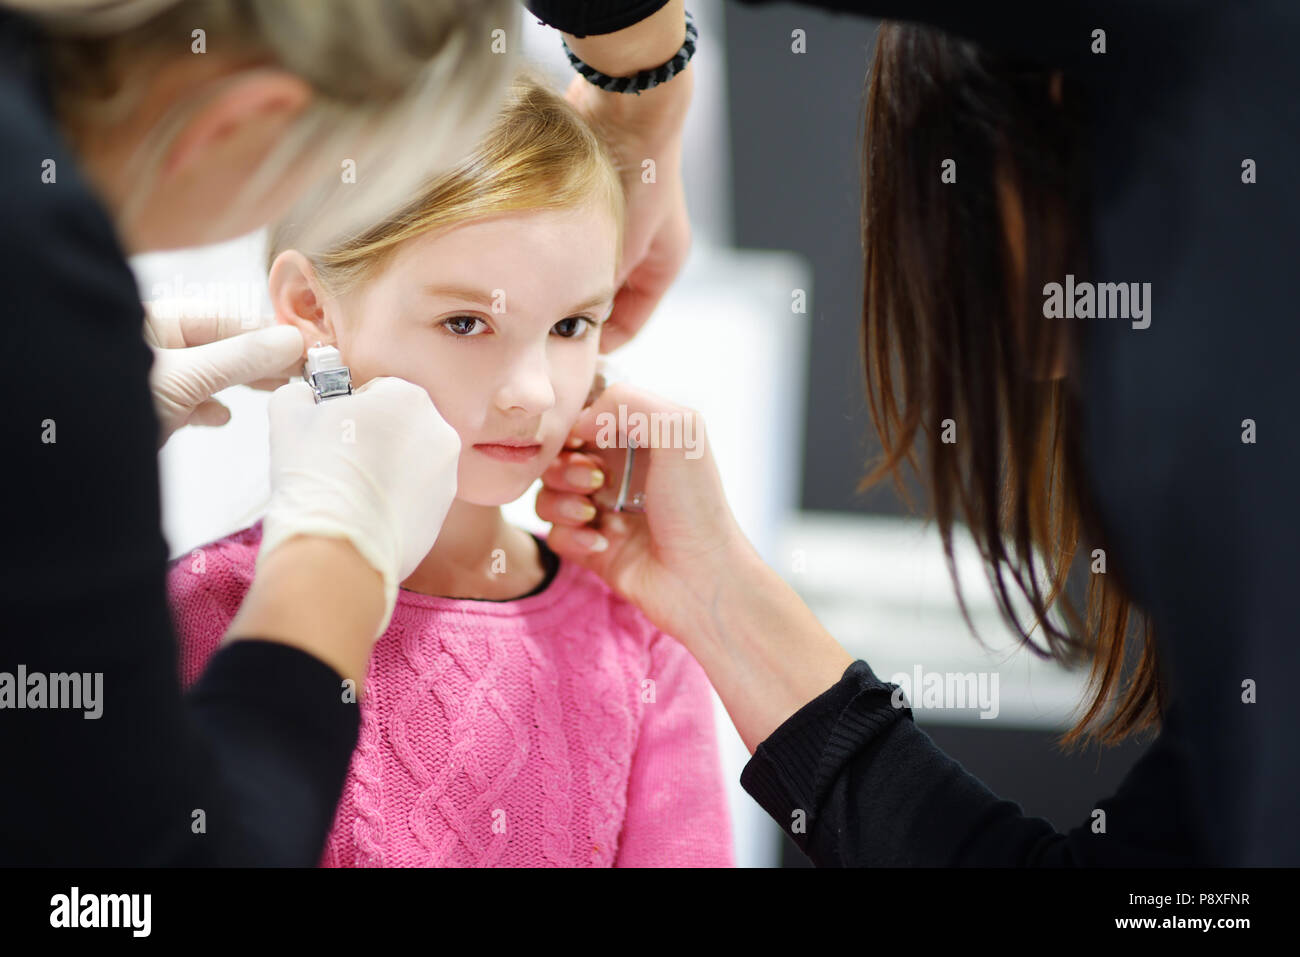 Adorable kleine Mädchen in Ohr Piercing Prozess mit Sonderausstattung im Beauty Center durch medizinische Mitarbeiter Stockfoto